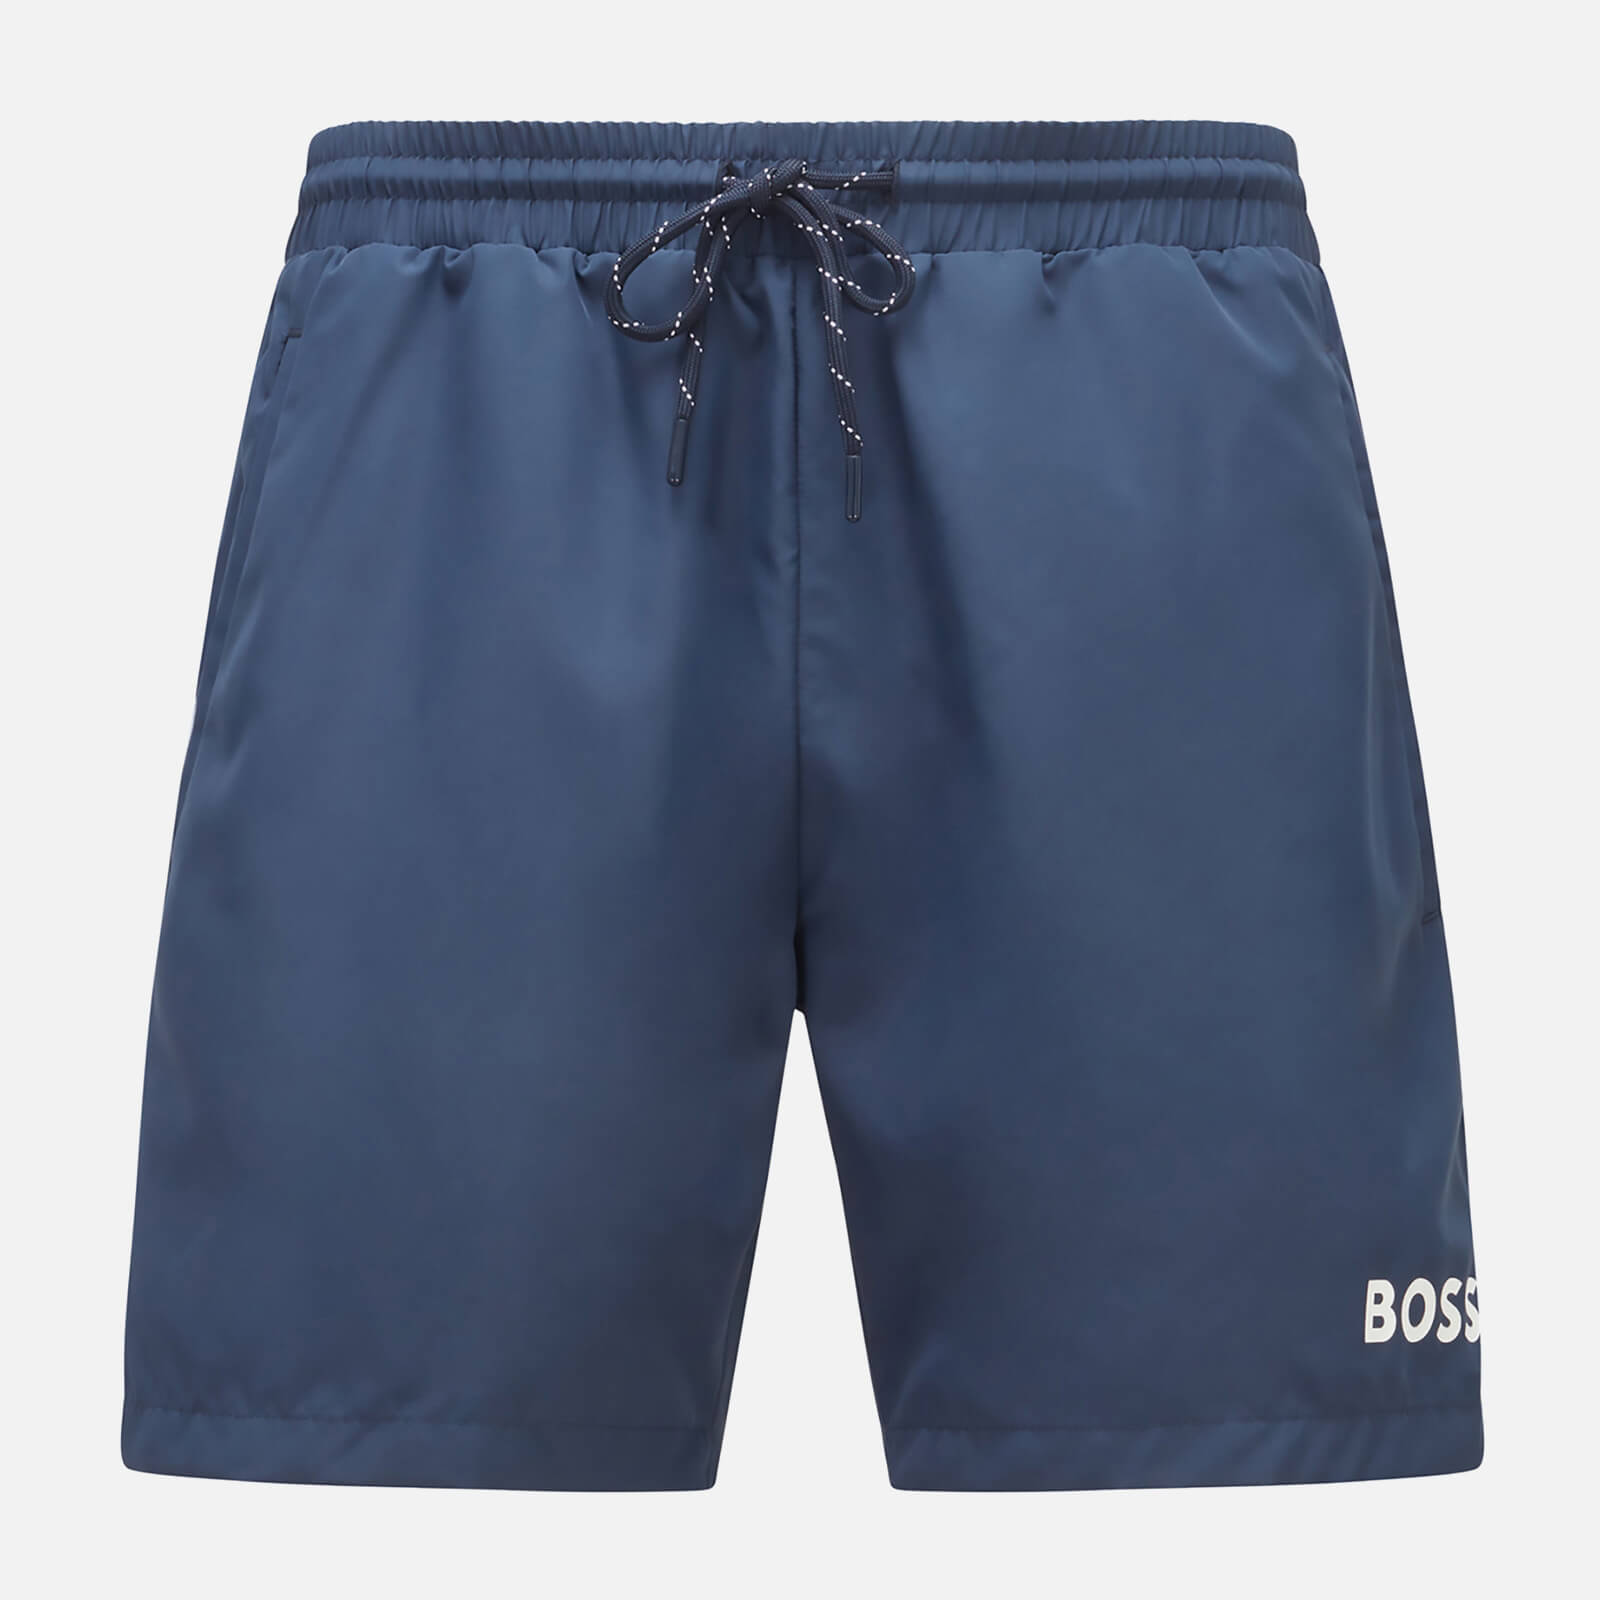 BOSS Bodywear Men's Starfish Swim Shorts - Navy - XL